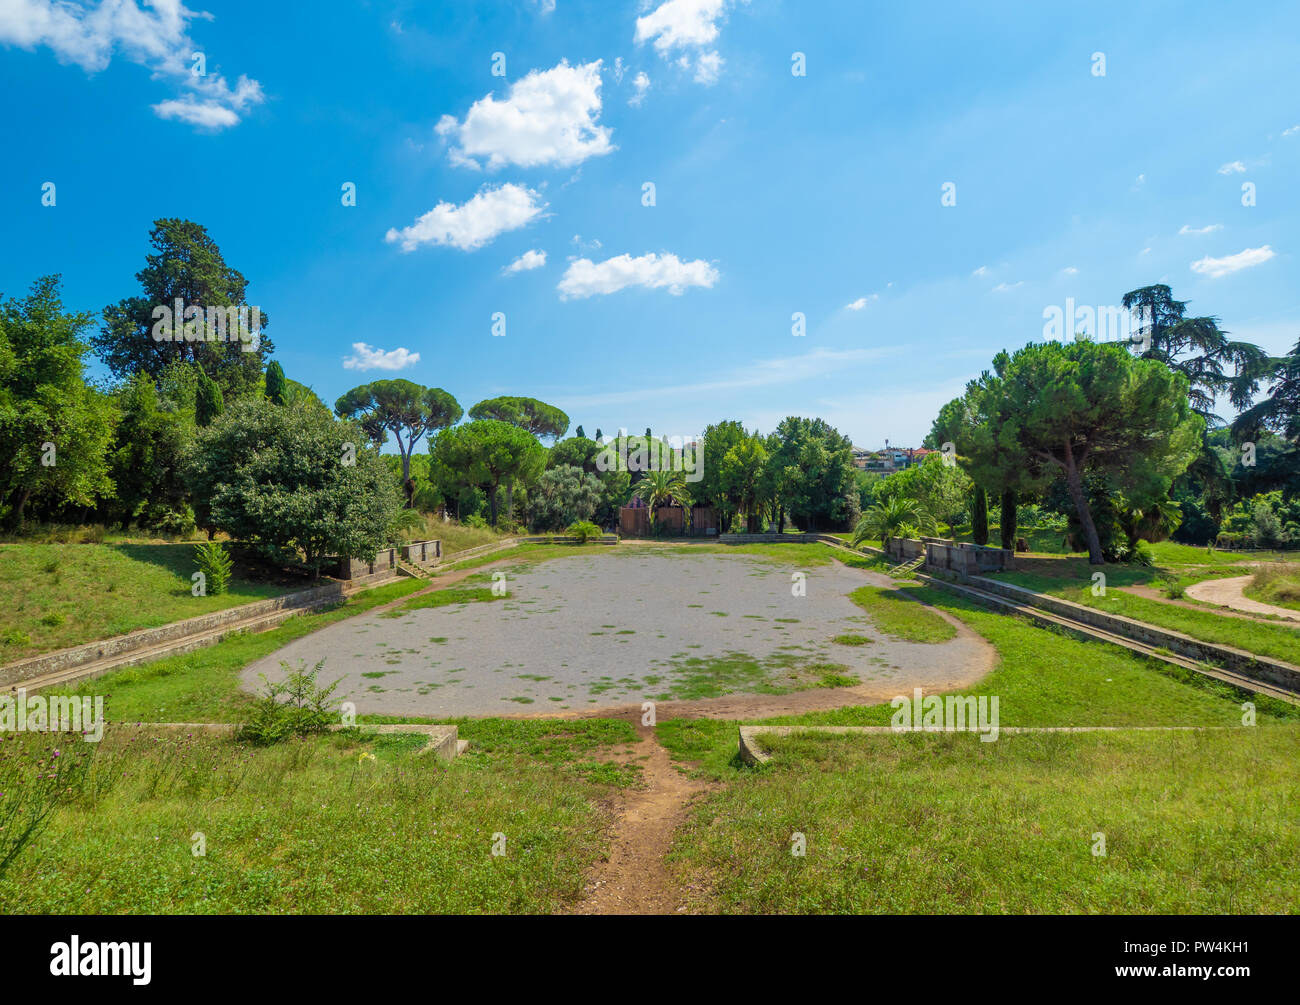 Rome, Italie - une vue de la Villa Torlonia, parc public de Rome avec des fontaines, bâtiments néoclassiques, musée et jardins environnants Banque D'Images